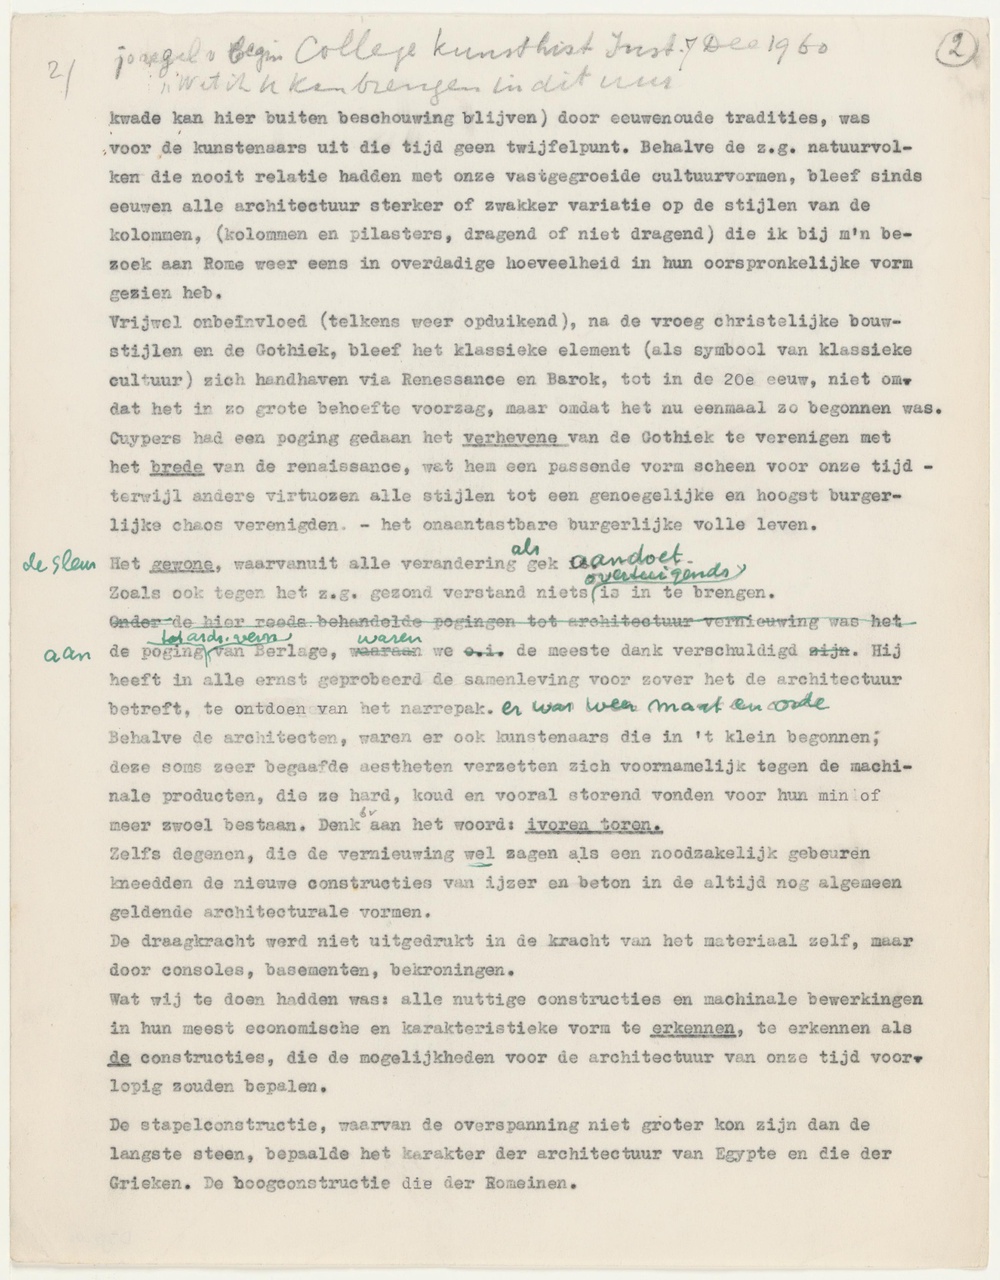 Tekst voor college op het Kunsthistorisch Instituut dec. 1960